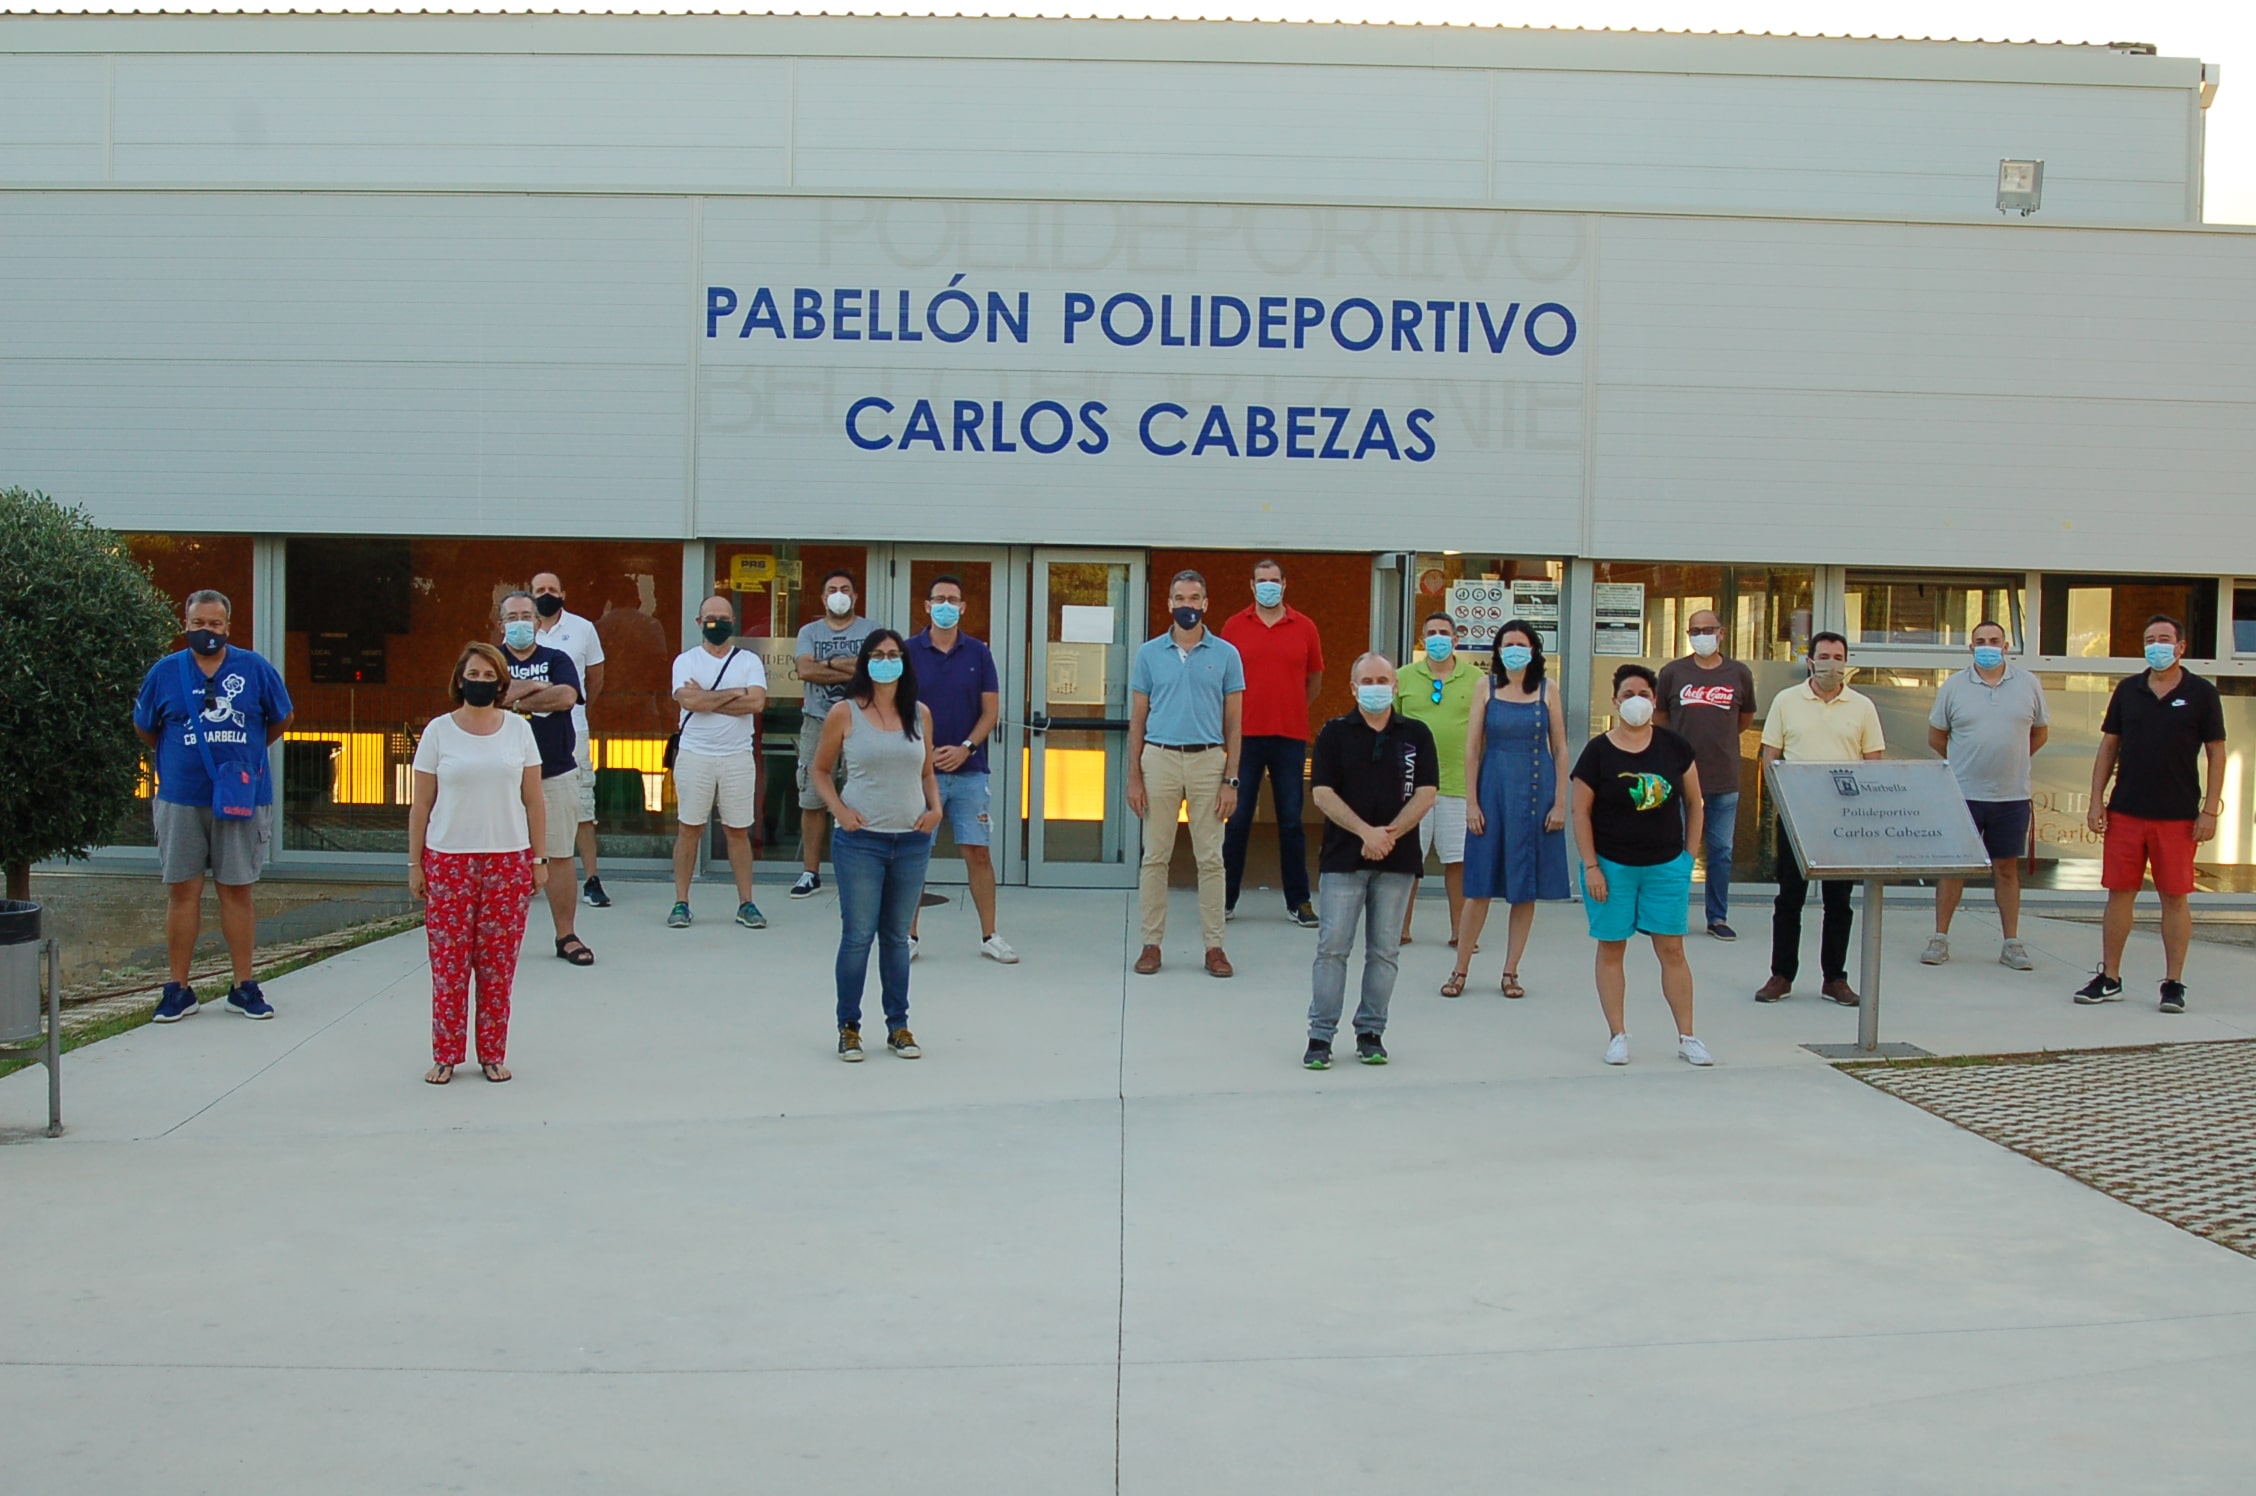 CB Marbella, CB Costa Marbella y CB Platero se unen en un nuevo club de cantera